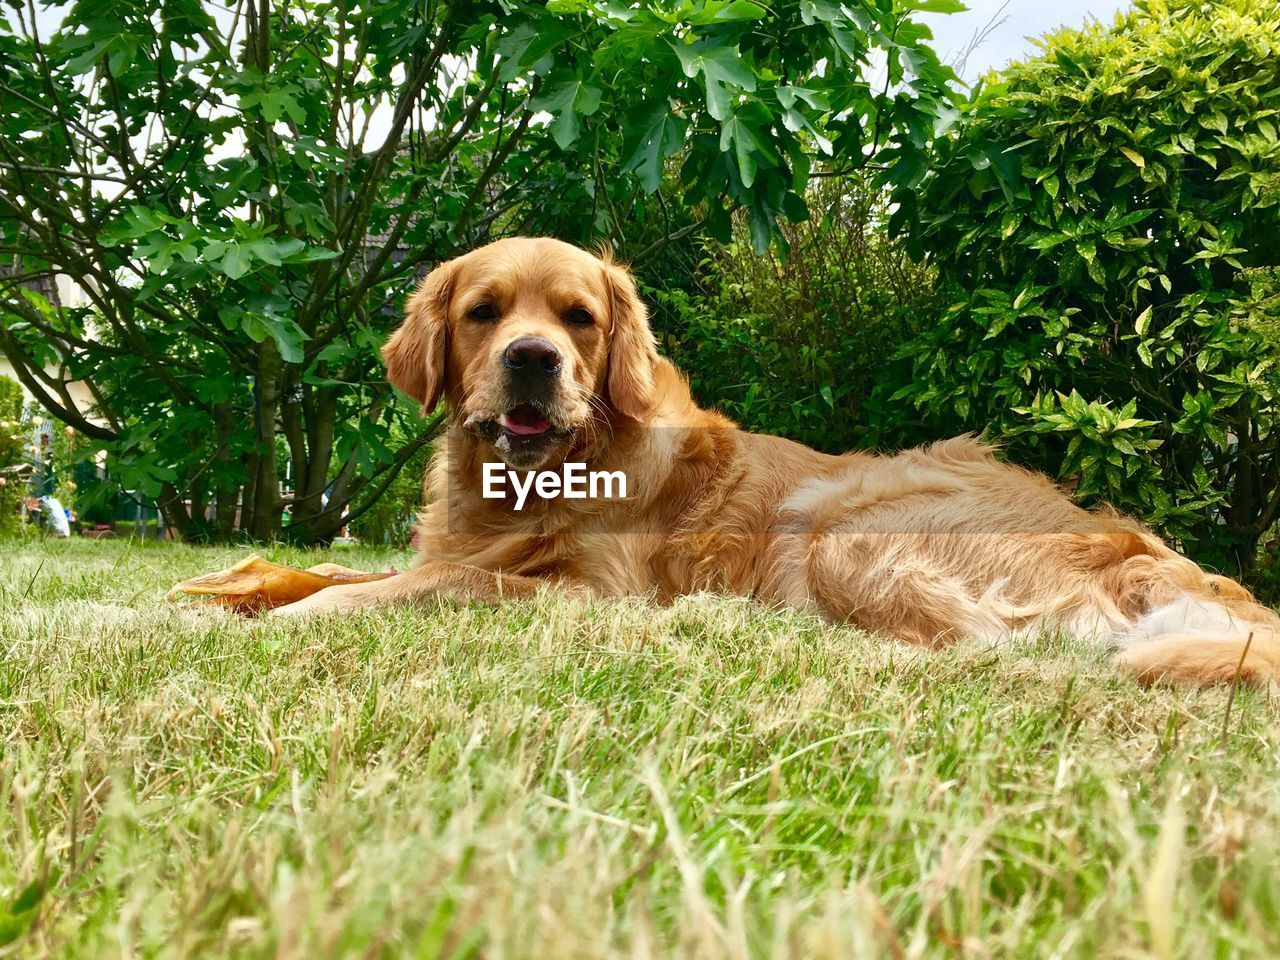 Portrait of golden retriever relaxing on grass